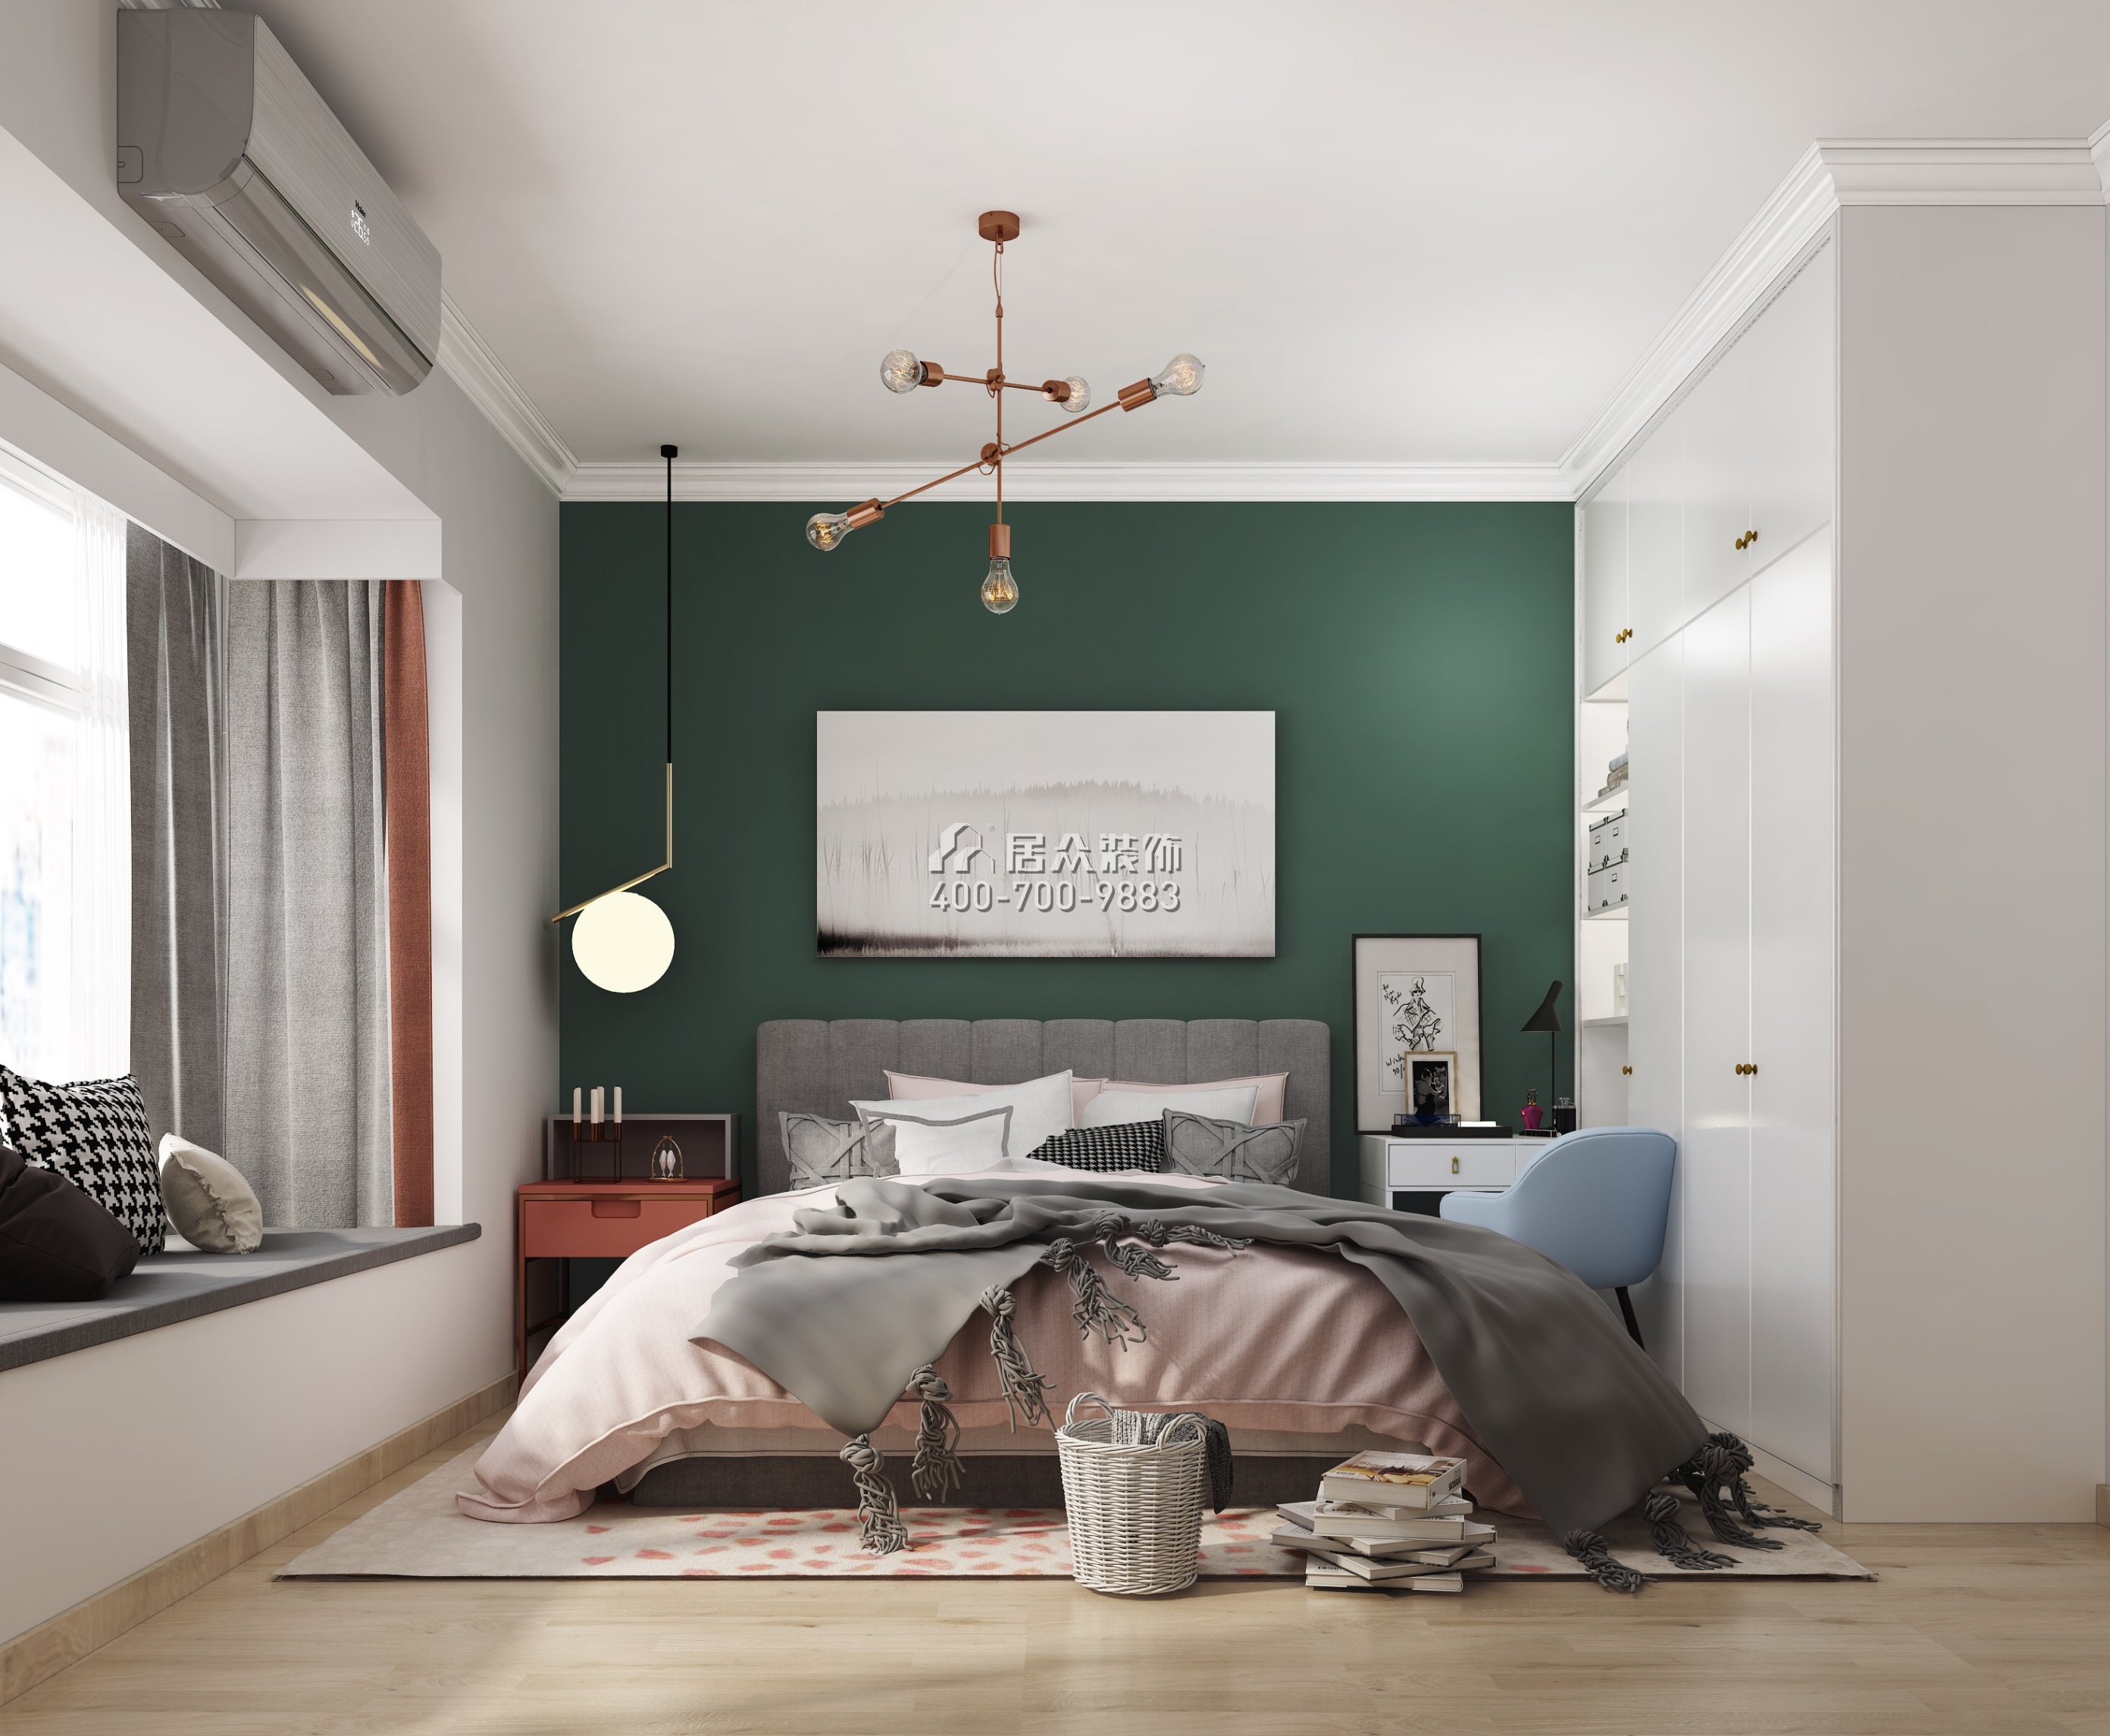 傳麒尚林82平方米現代簡約風格平層戶型臥室裝修效果圖